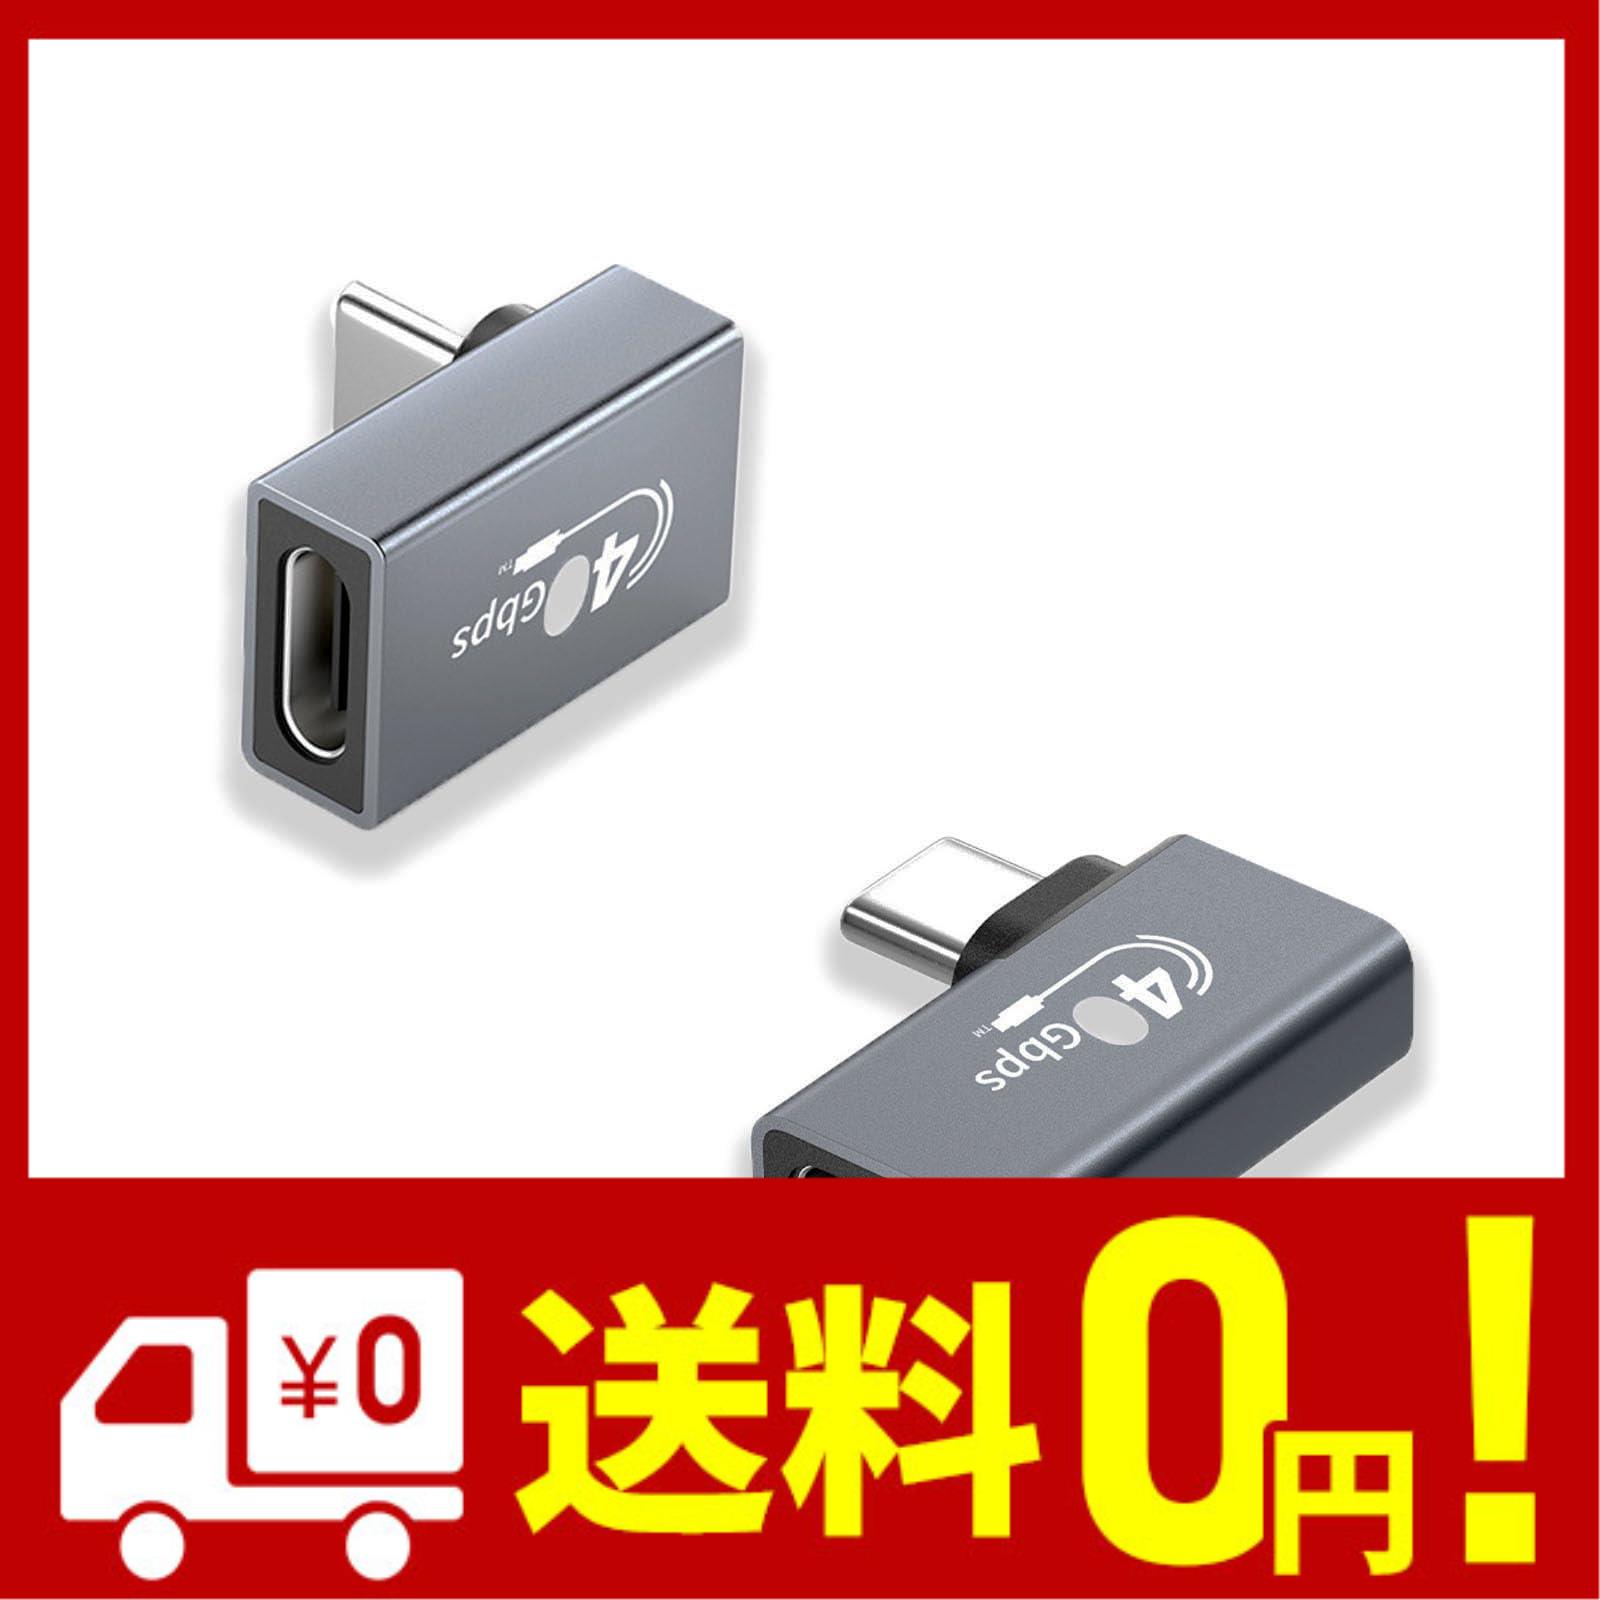 USB4.0 Type C 変換アダプター usb c l タイプc L型変換アダプター 2個セットT USB4.0延長アダプタ 40Gbps高速転送 100 5A急速充電 8K@6